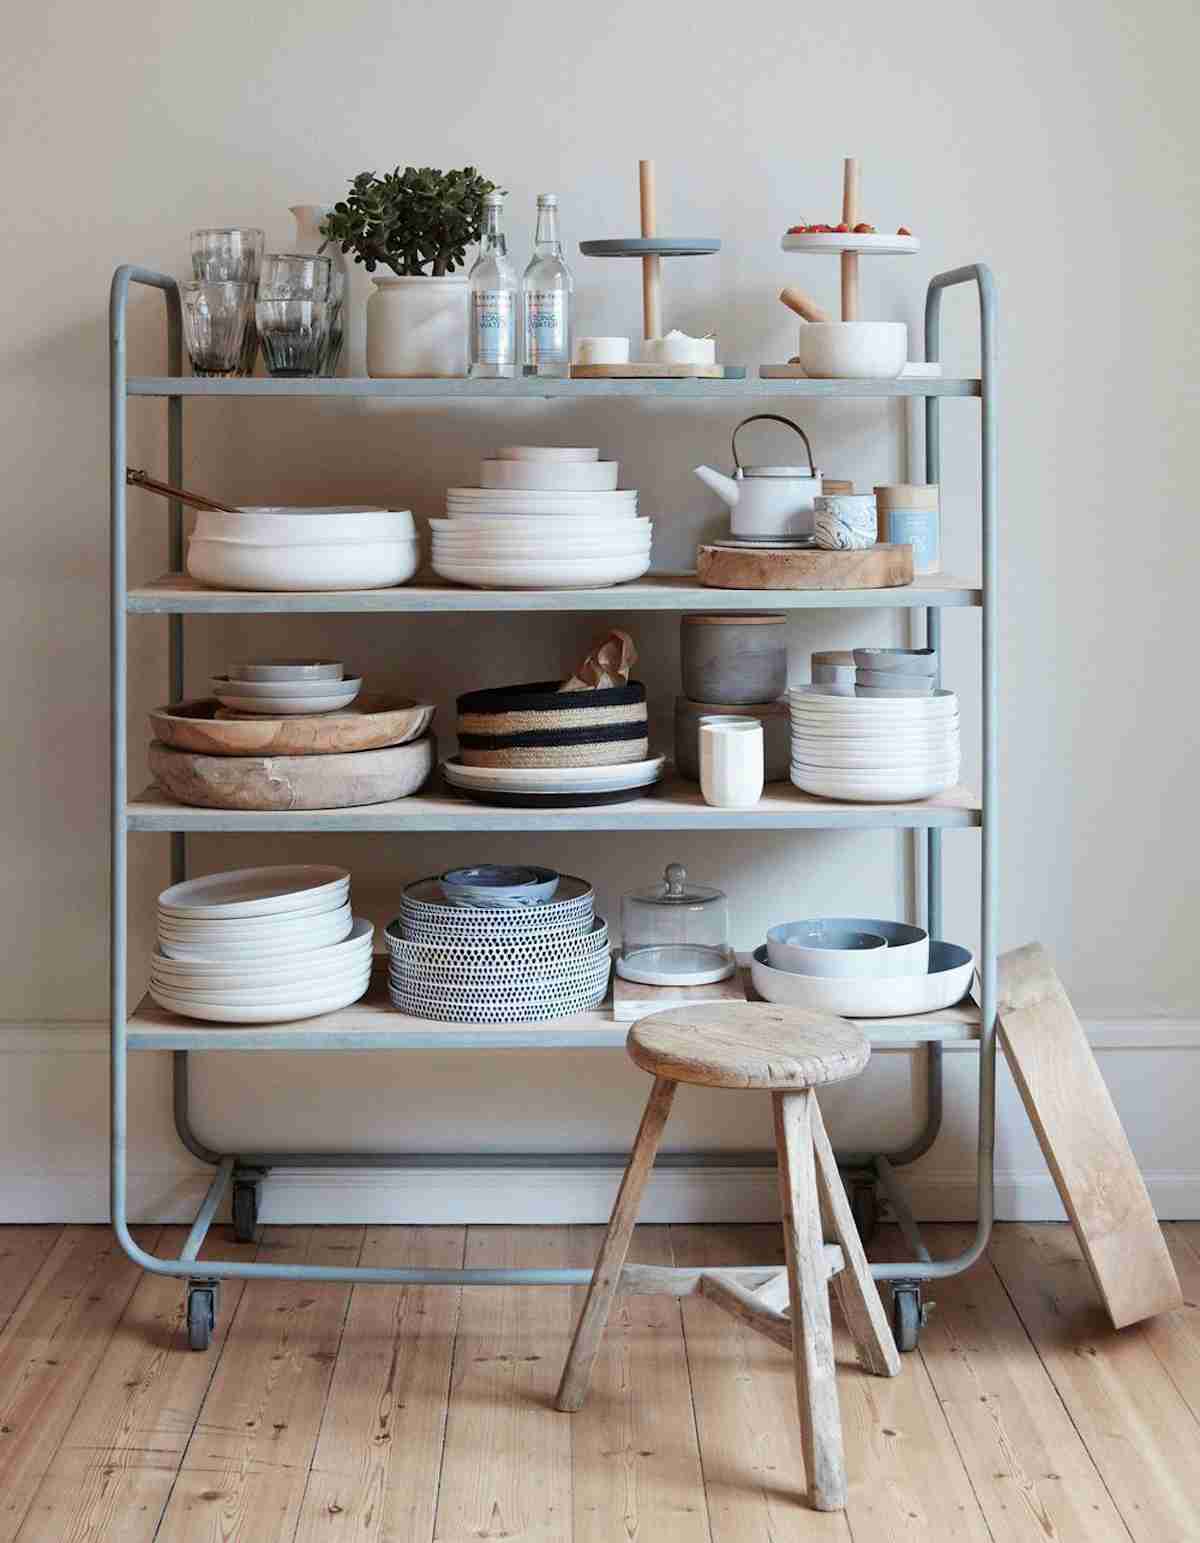 Cocinas sin muebles altos: ¿Cómo organizarlas?